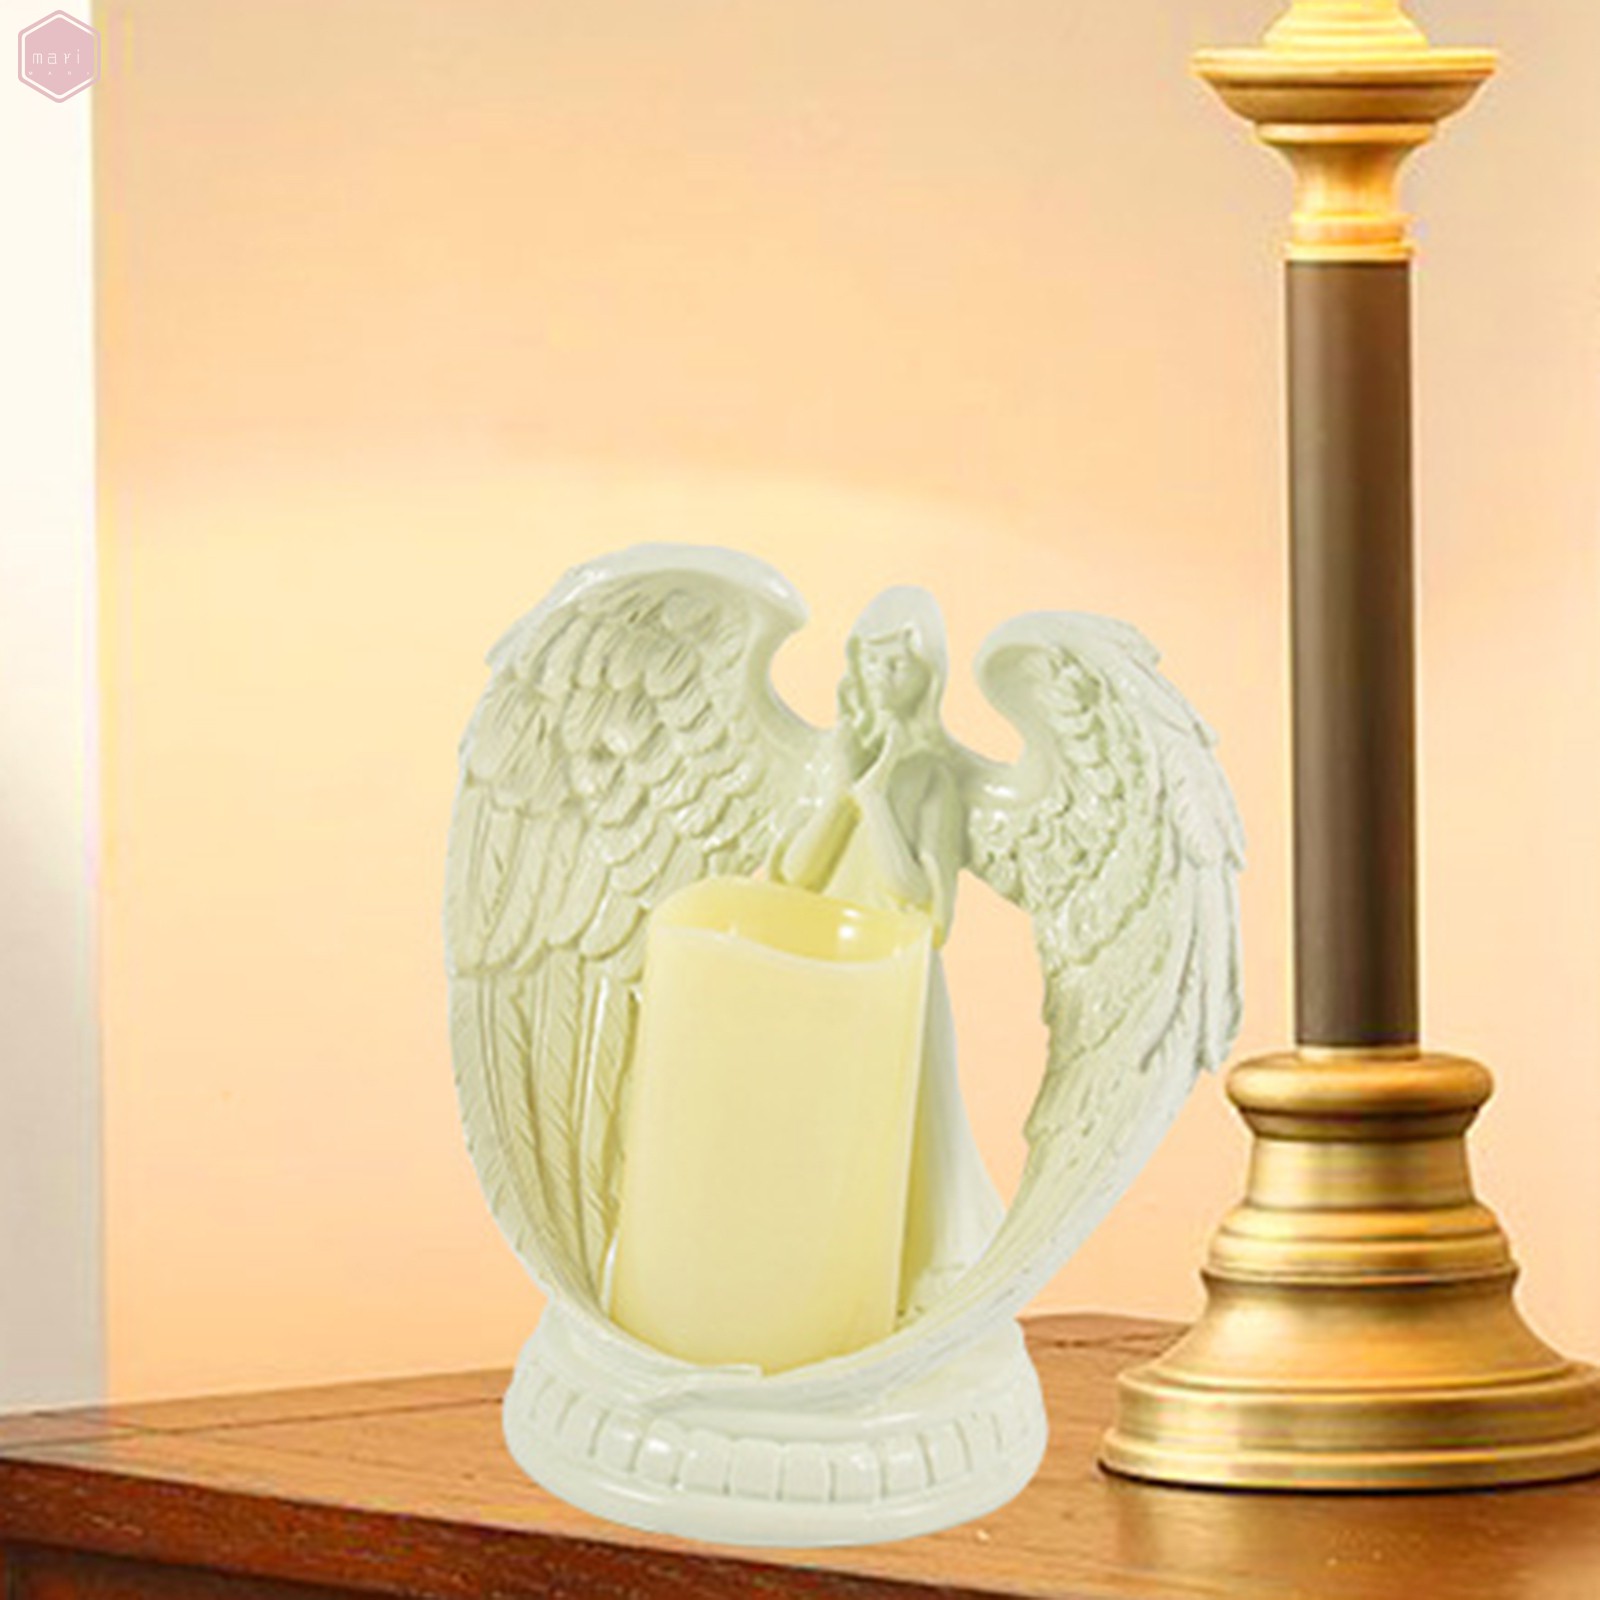 Giá Đỡ Đèn Cầy Hình Thiên Thần Bằng Nhựa Resin 16cm Trang Trí Nhà Cửa / Văn Phòng